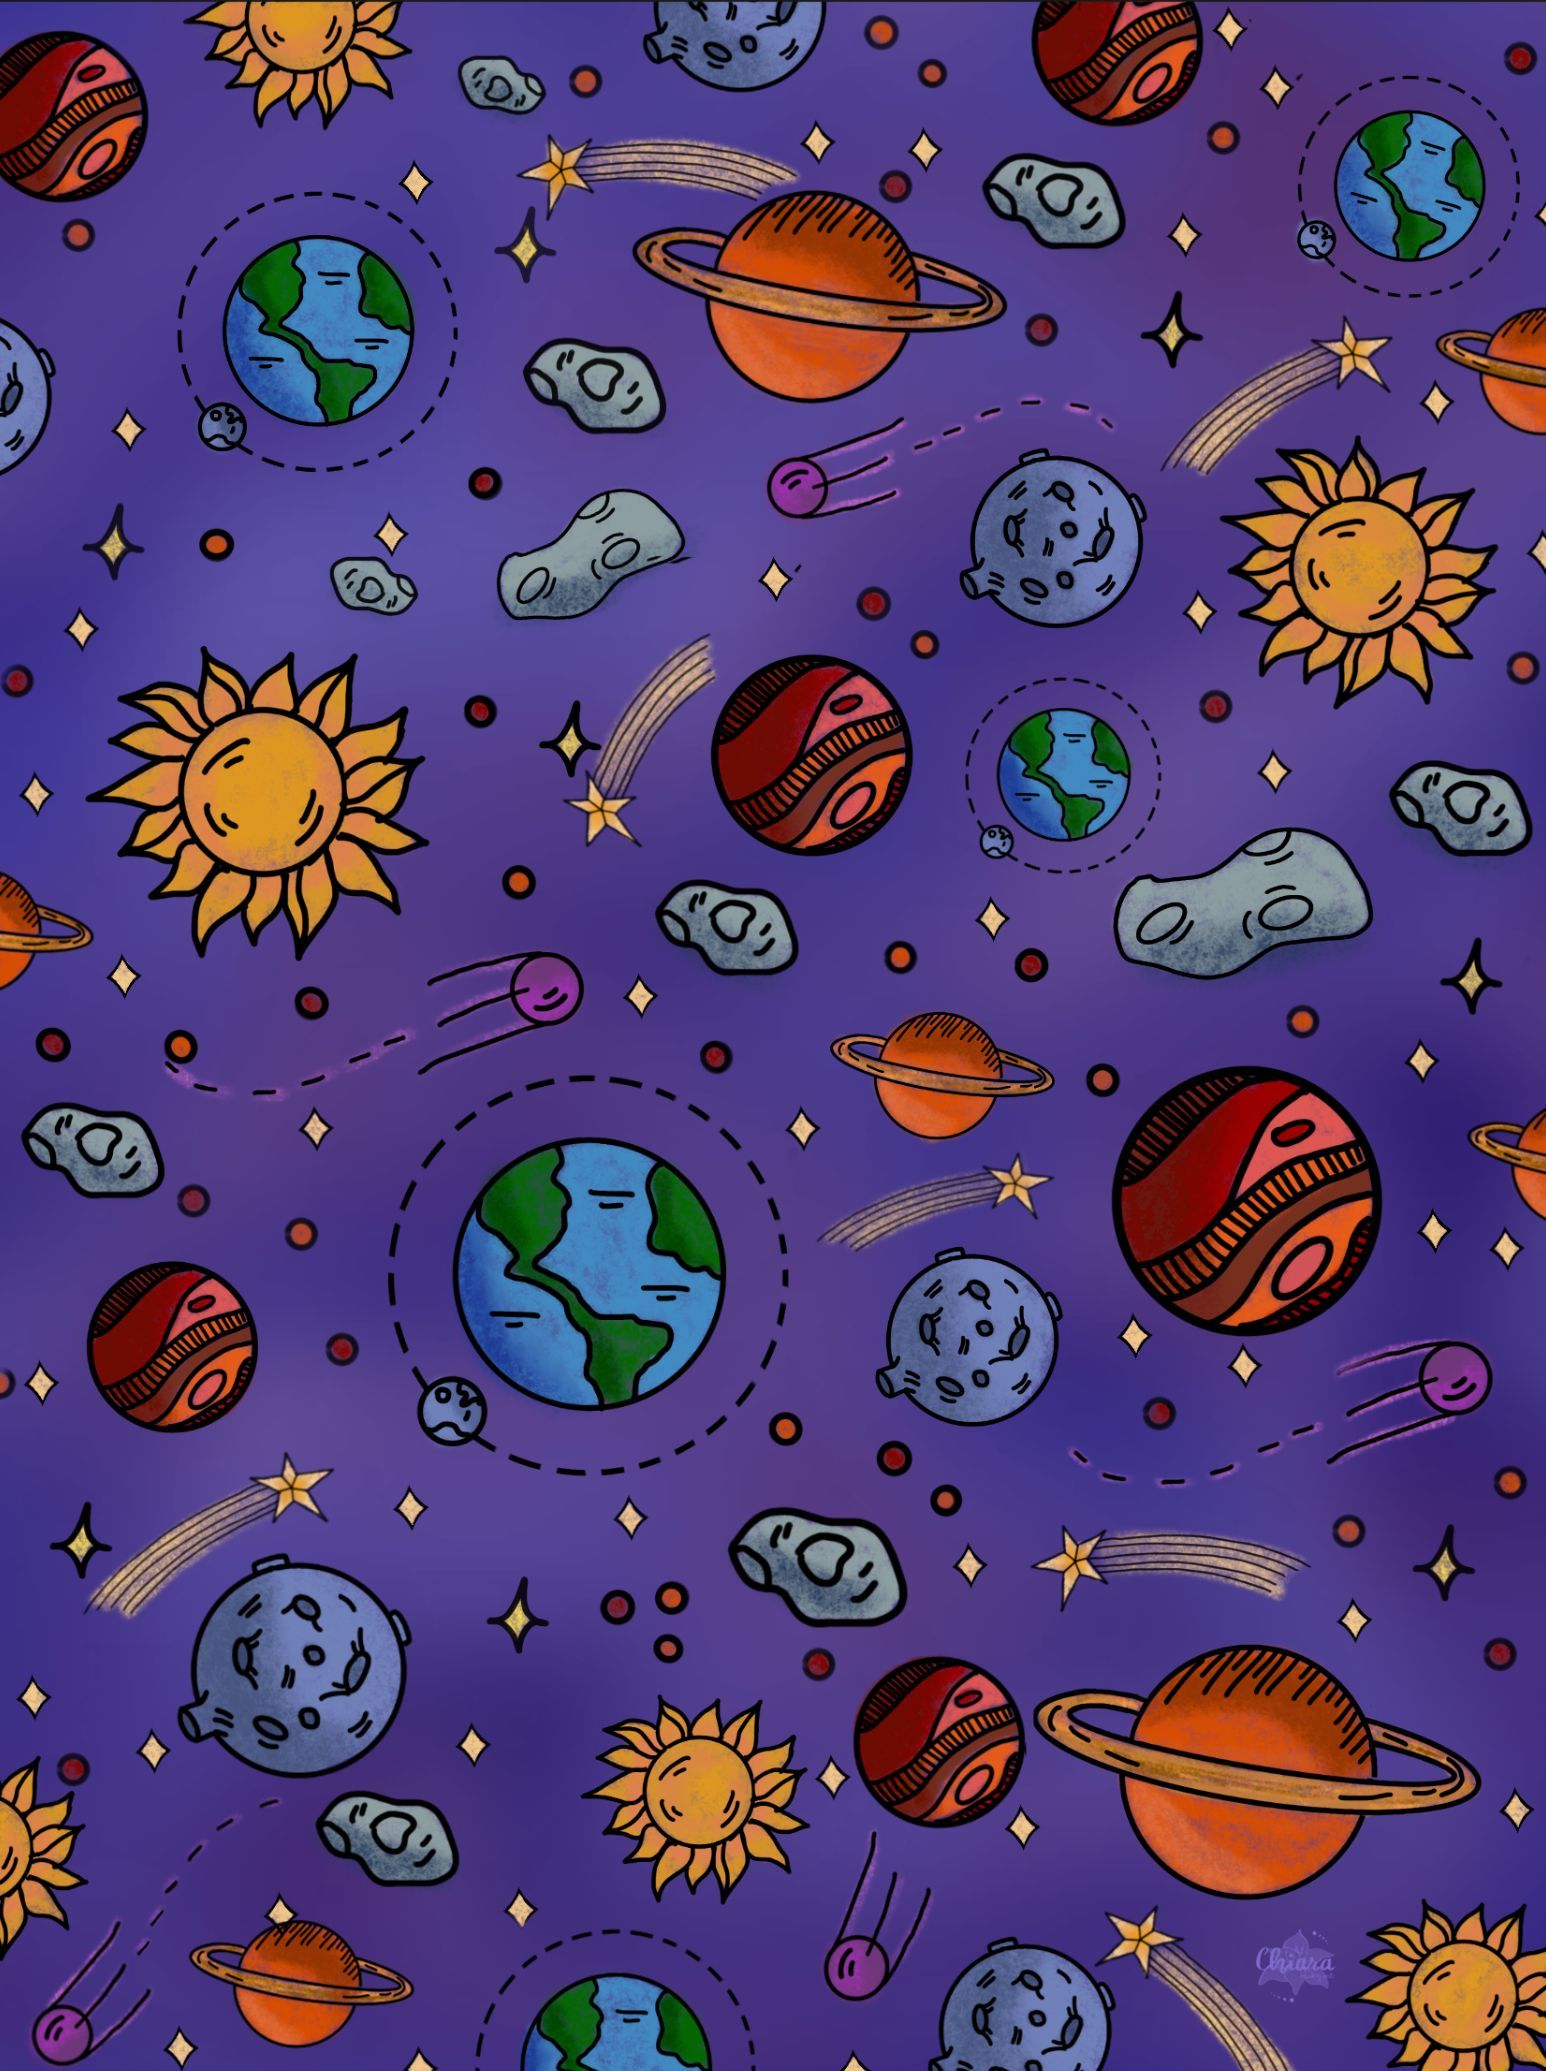 Space doodle wallpaper. Space doodles, Colorful art, Doodle cartoon